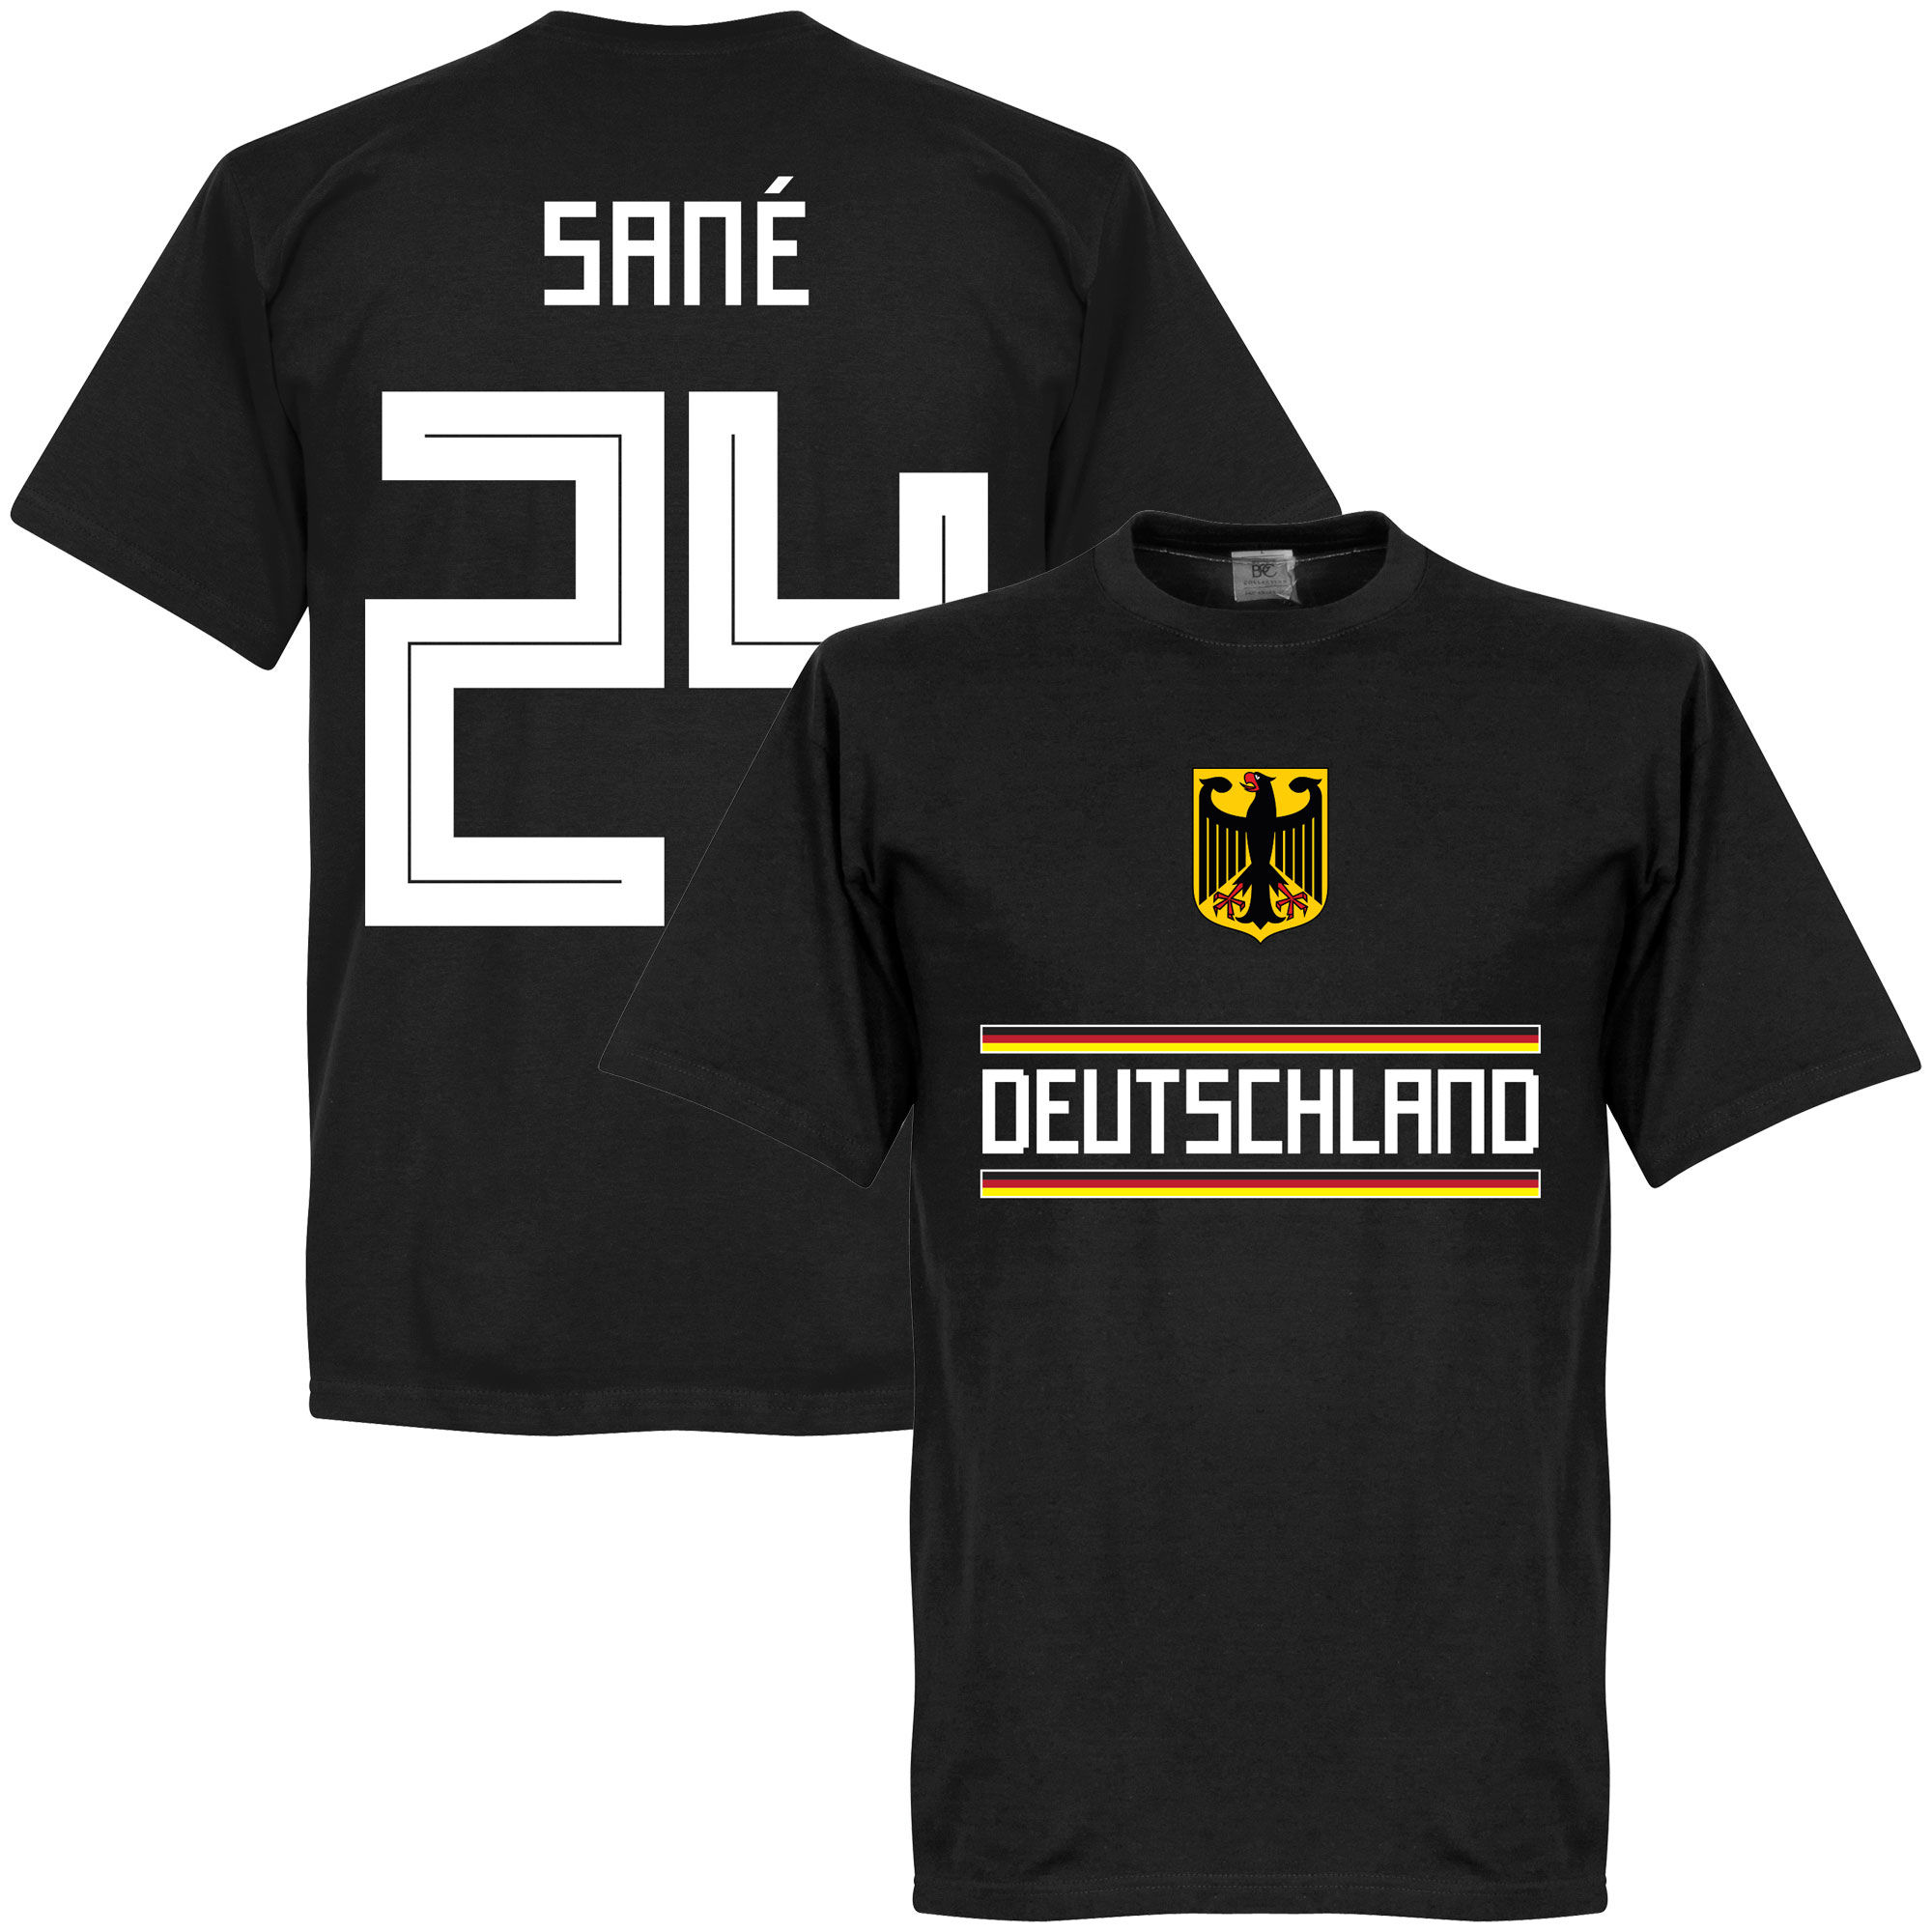 Německo - Tričko - Leroy Sané, černé, číslo 24